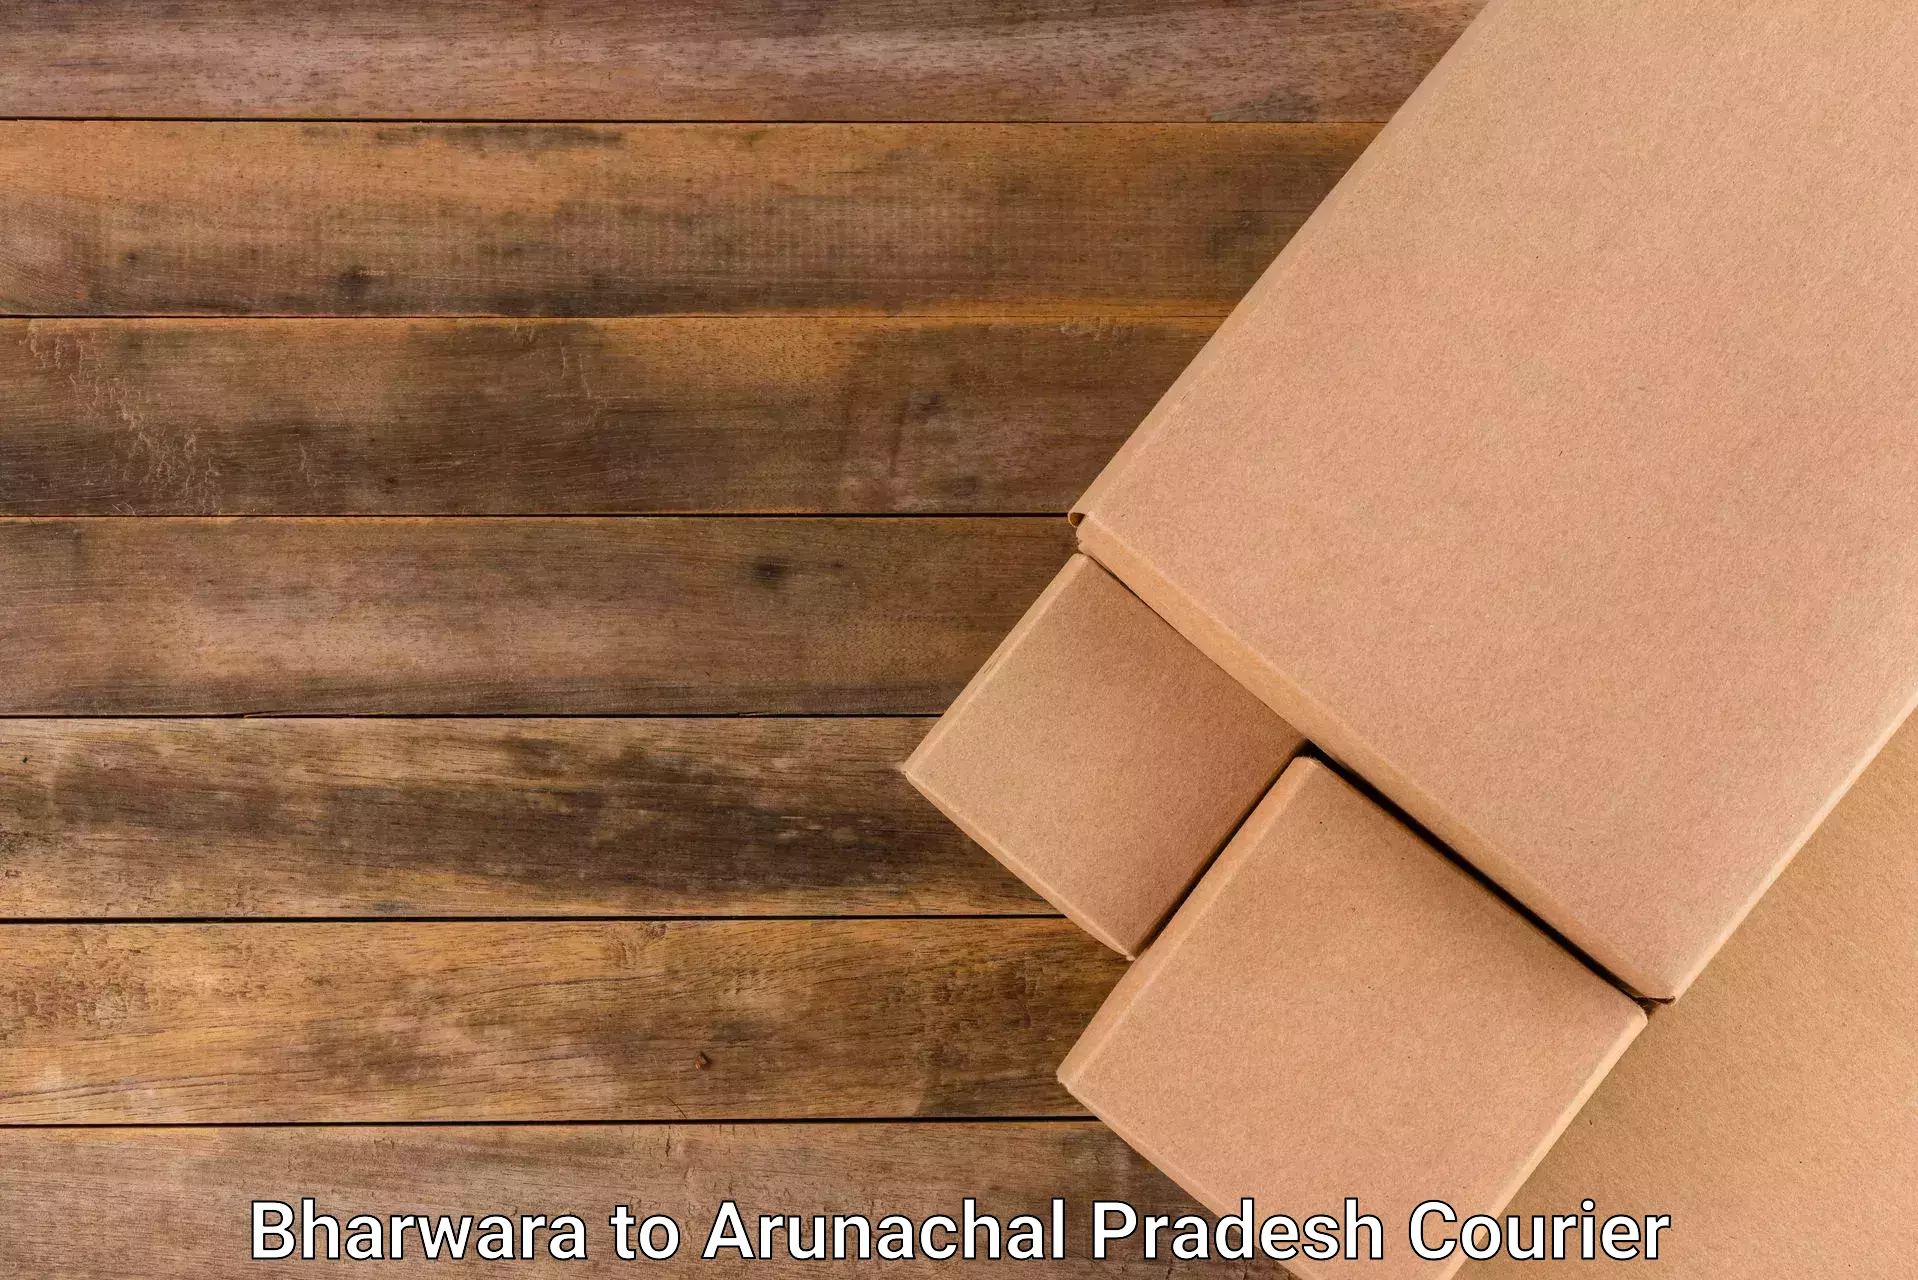 Courier app Bharwara to Lower Subansiri